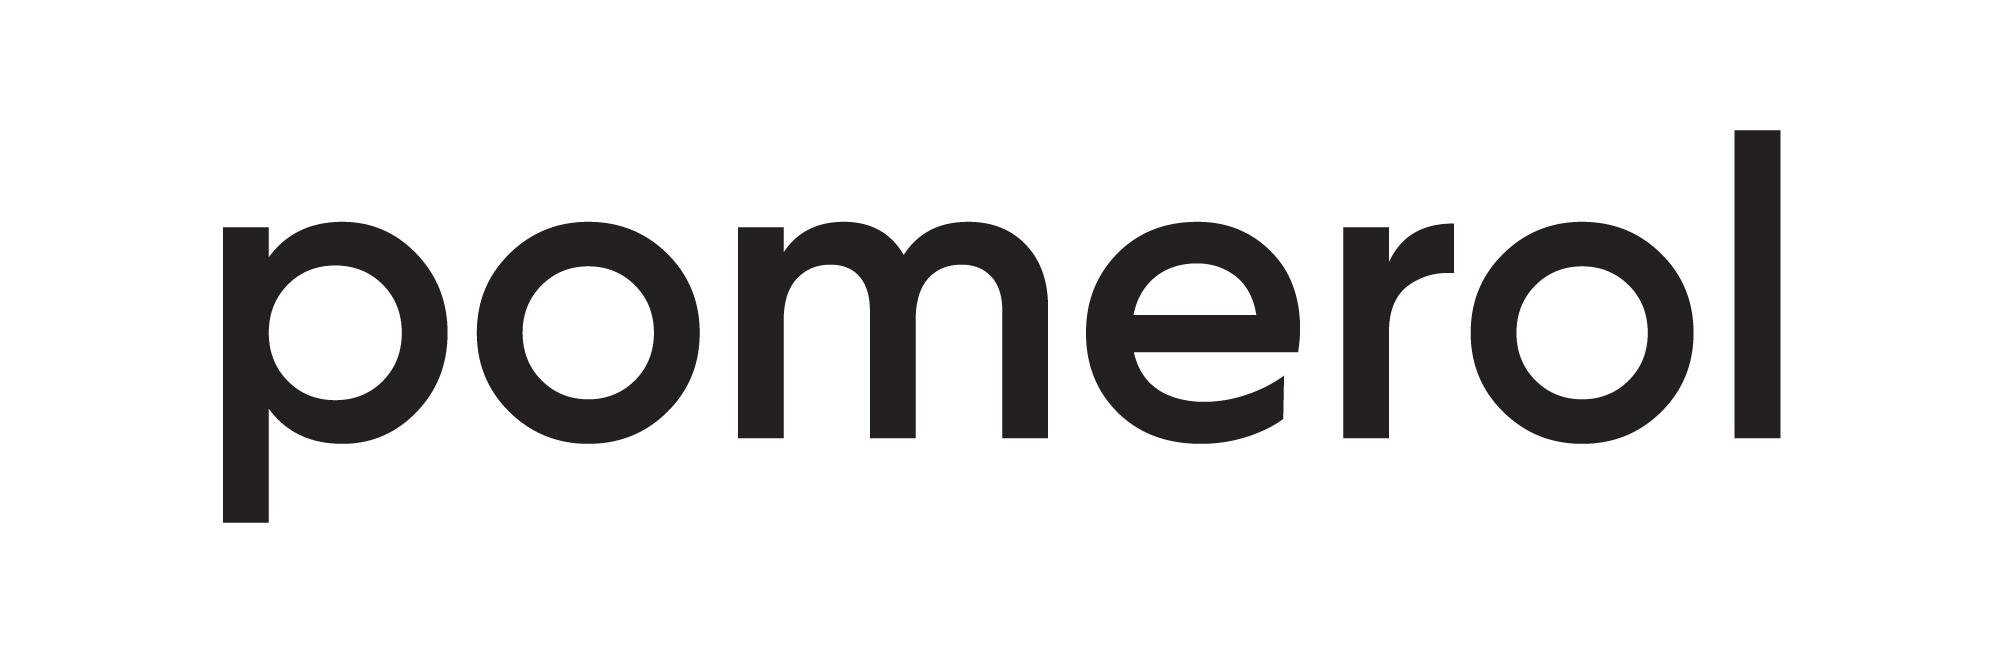 Pomerol logo